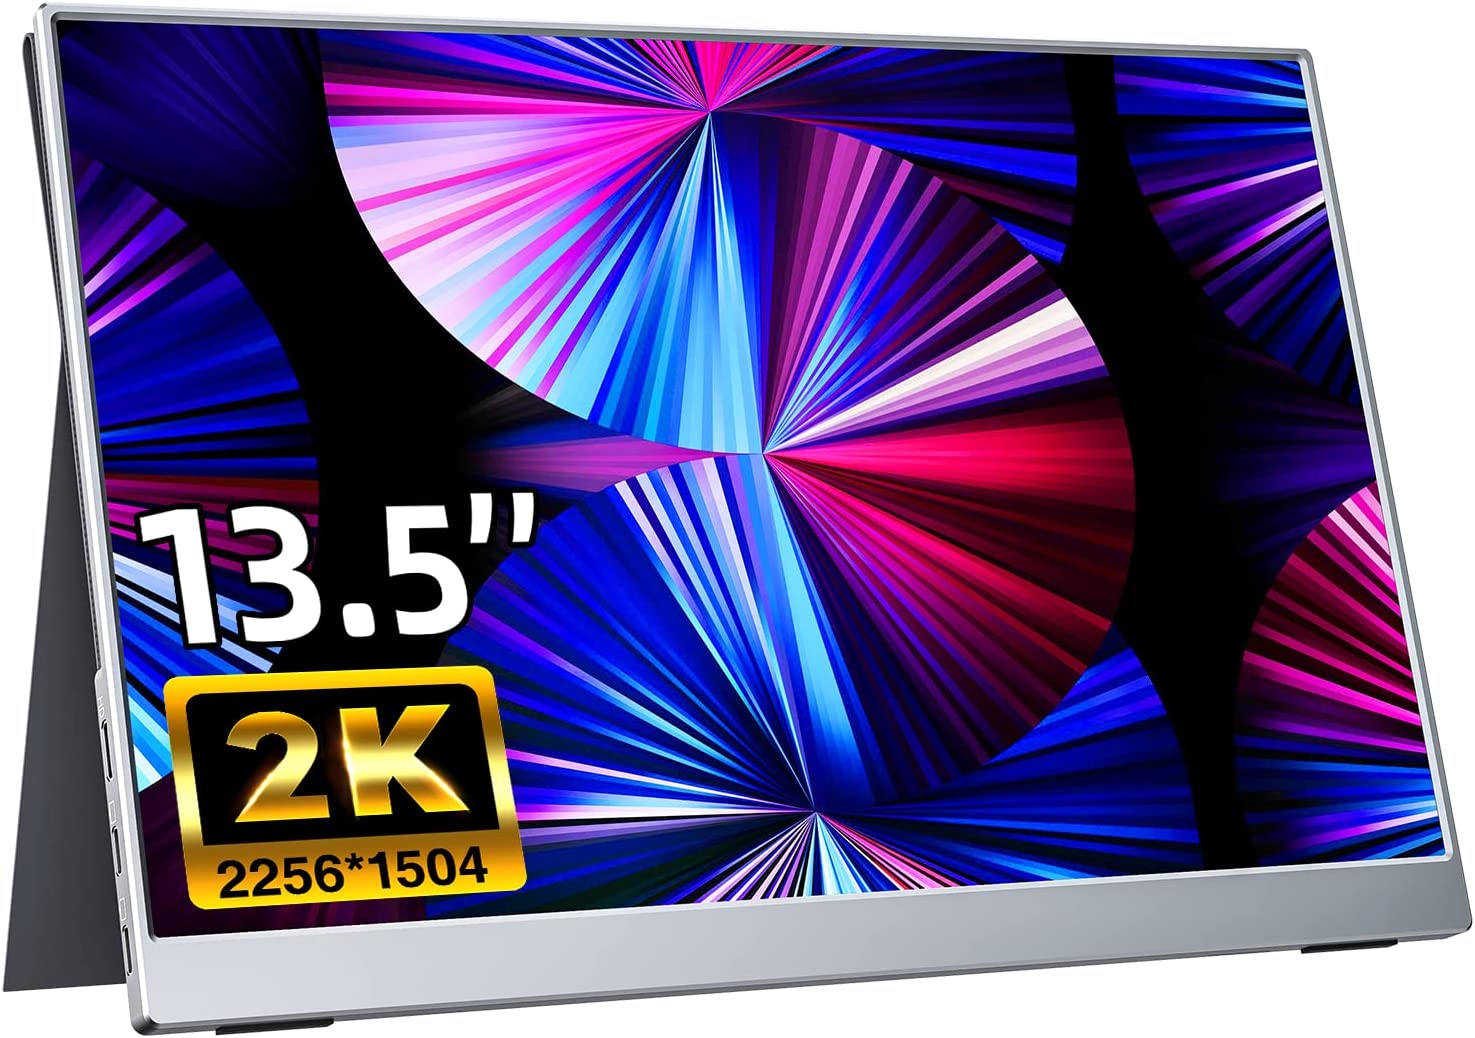 モバイルモニター kksmart 13.5インチ 超薄型 超軽量380g 狭額縁 400nits高輝度 100%sRGB色域 画像比自動適合 モバイルディスプレイ  HDRモード対応 保護カバー付き 非光沢IPSパネル 2K解像度(2256x1504)  PS5 XBOX Switch PC Macなど対応 NK-135